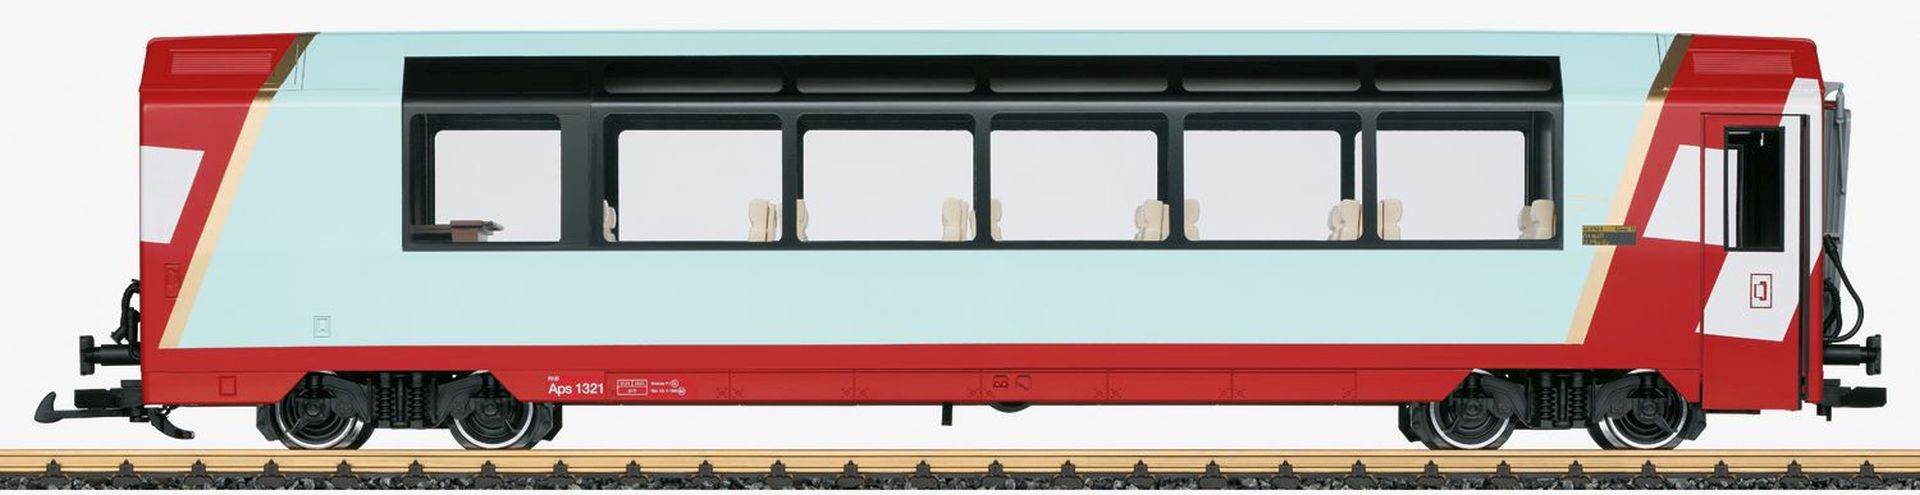 LGB 33670 - Panoramawagen 1. Klasse, RhB, Ep.VI